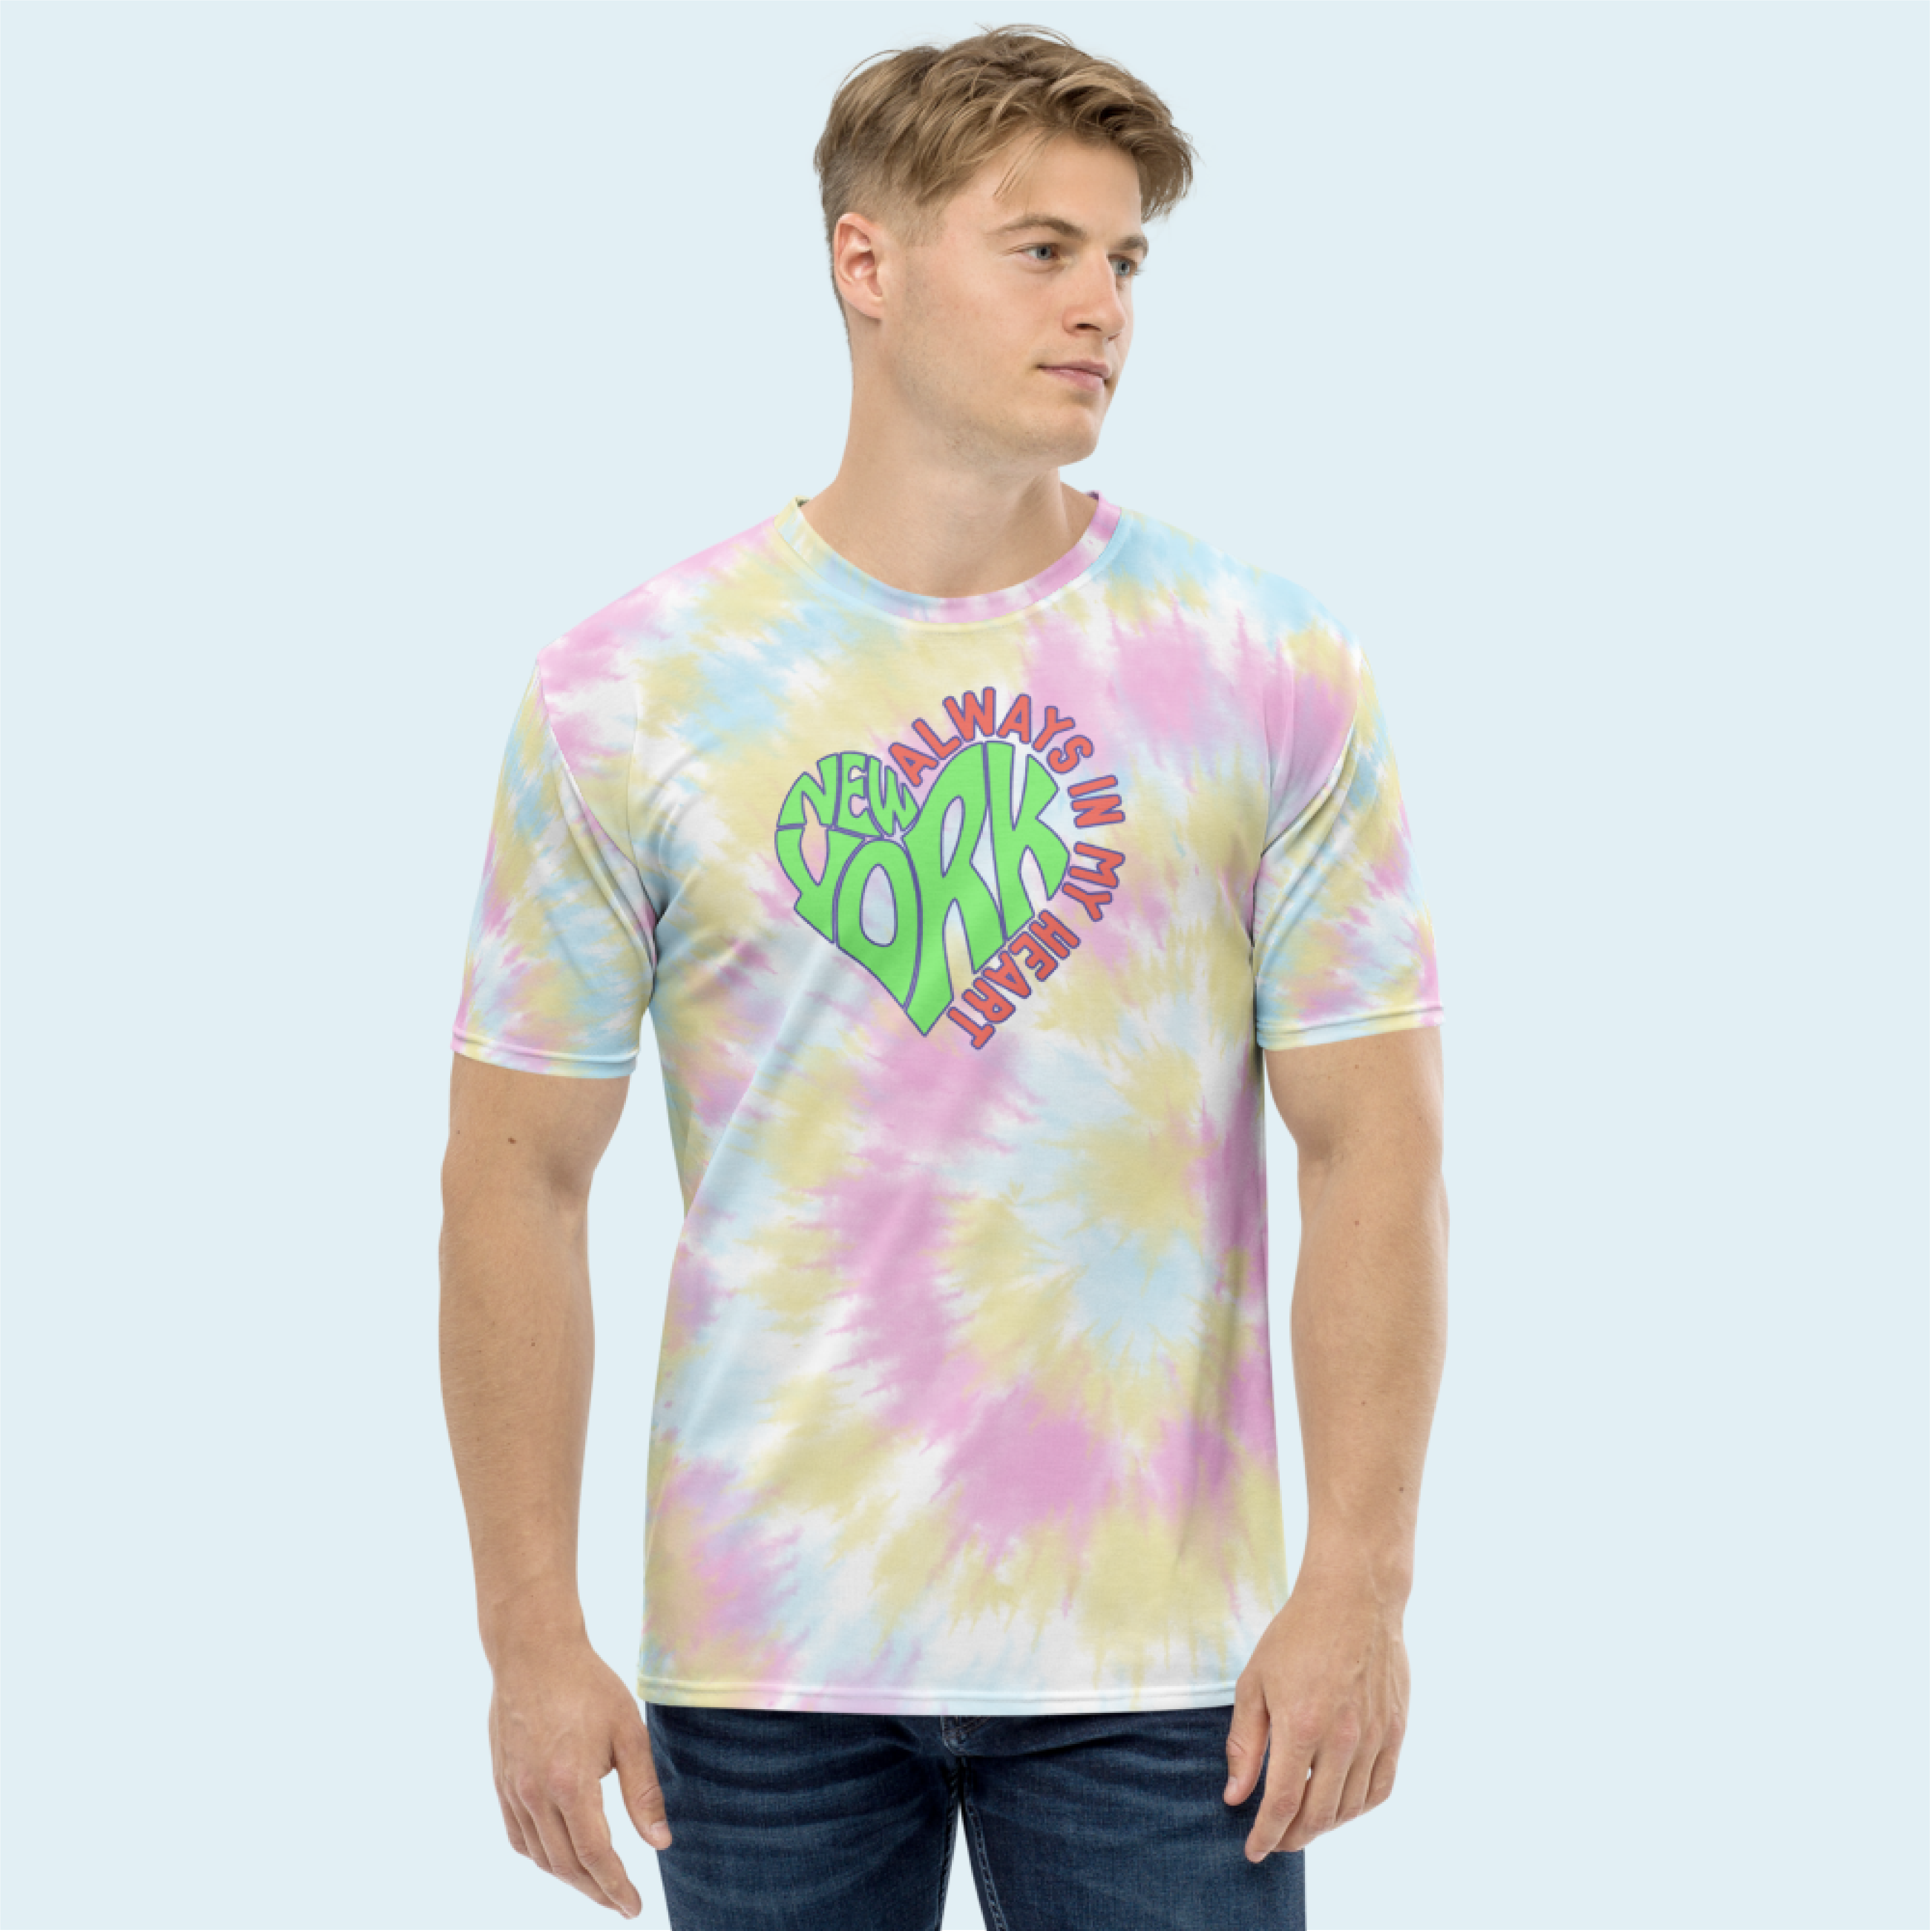 Heart Tie Dye T-Shirt